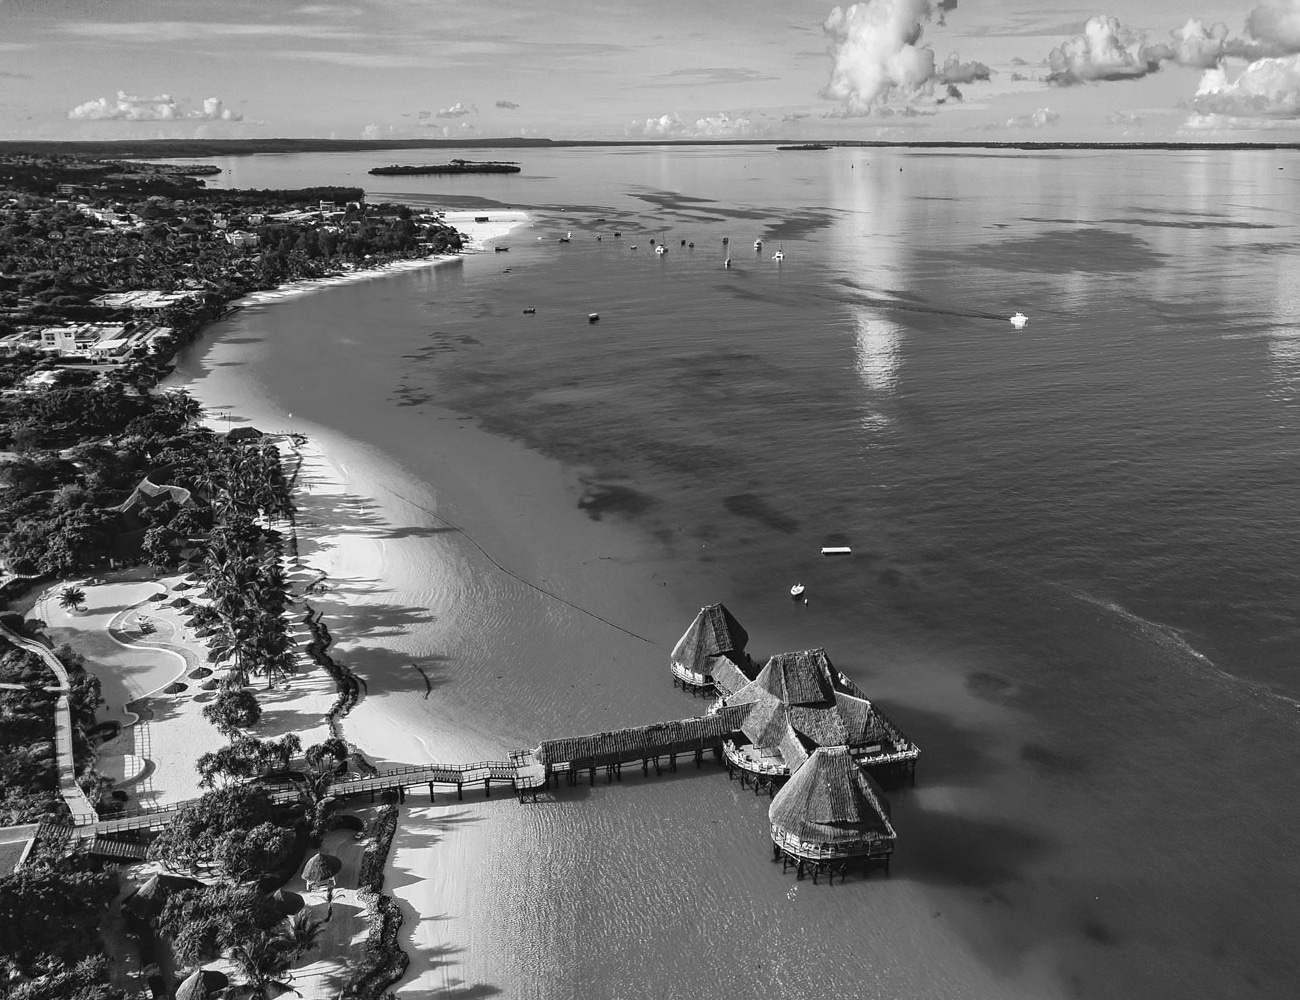 The Beautiful Beaches of Zanzibar